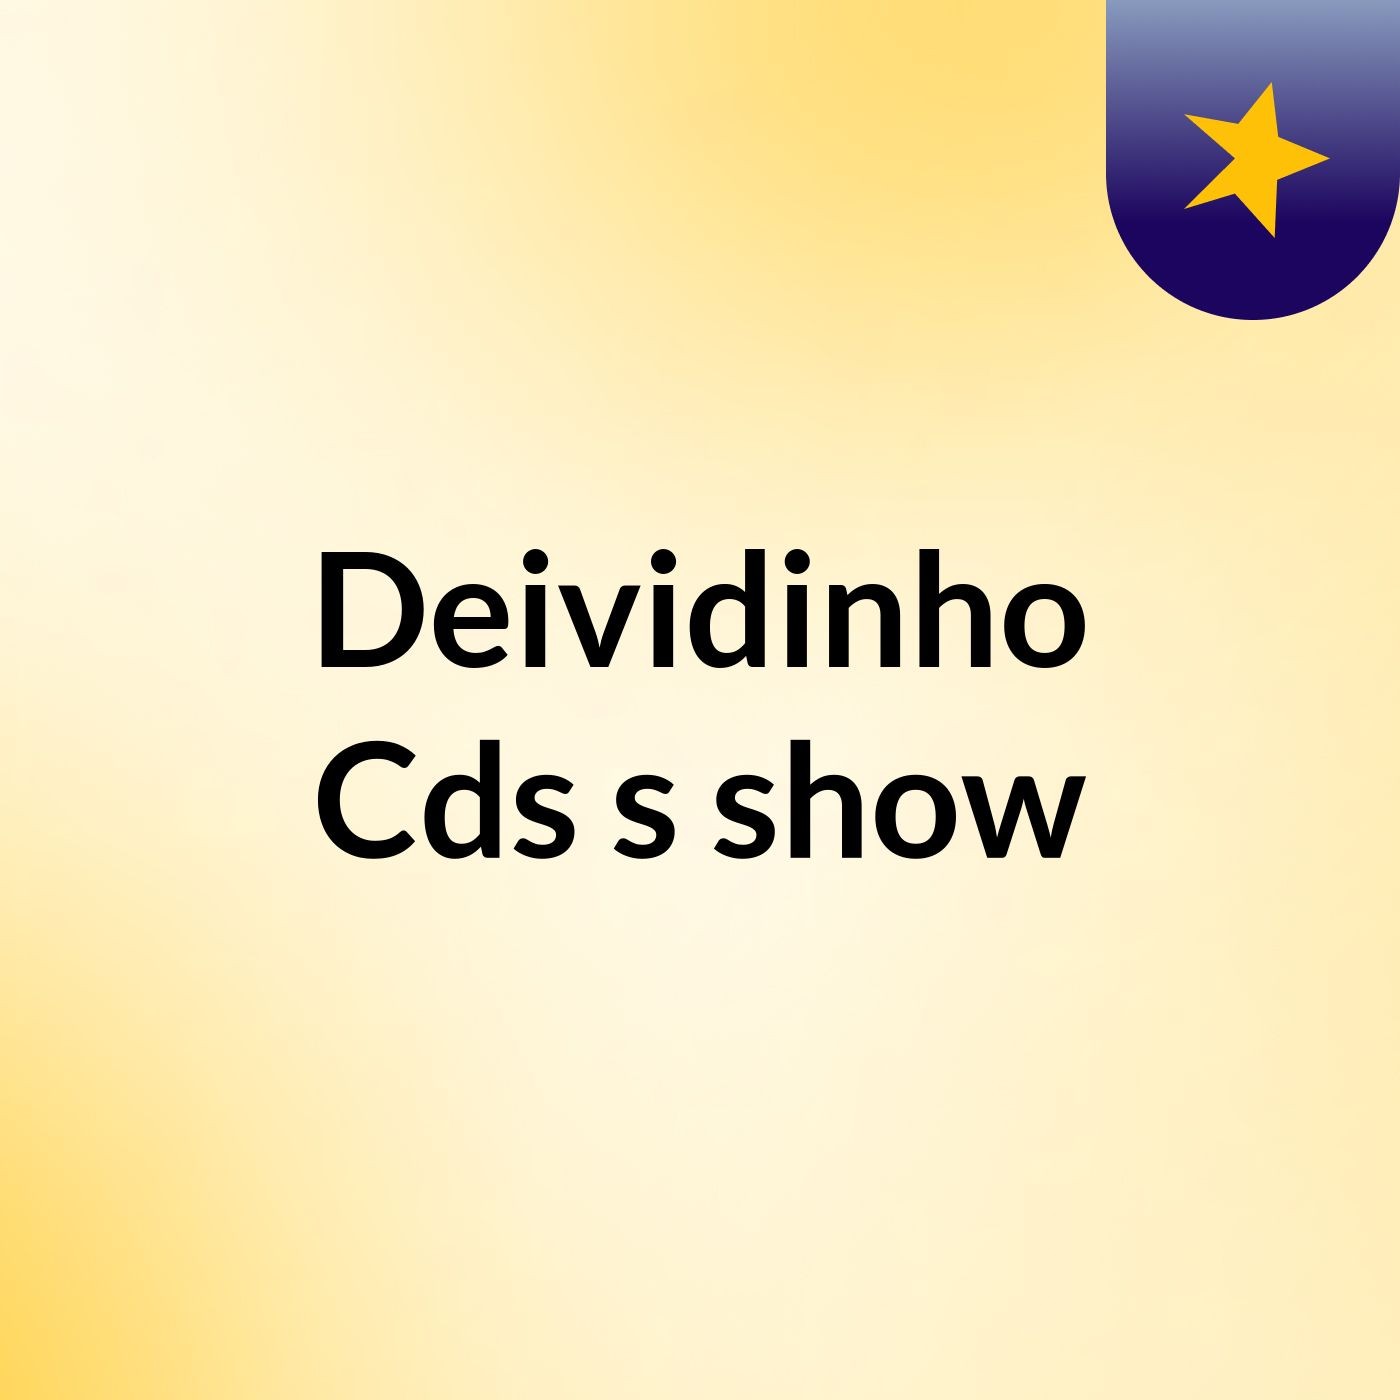 Deividinho Cds's show